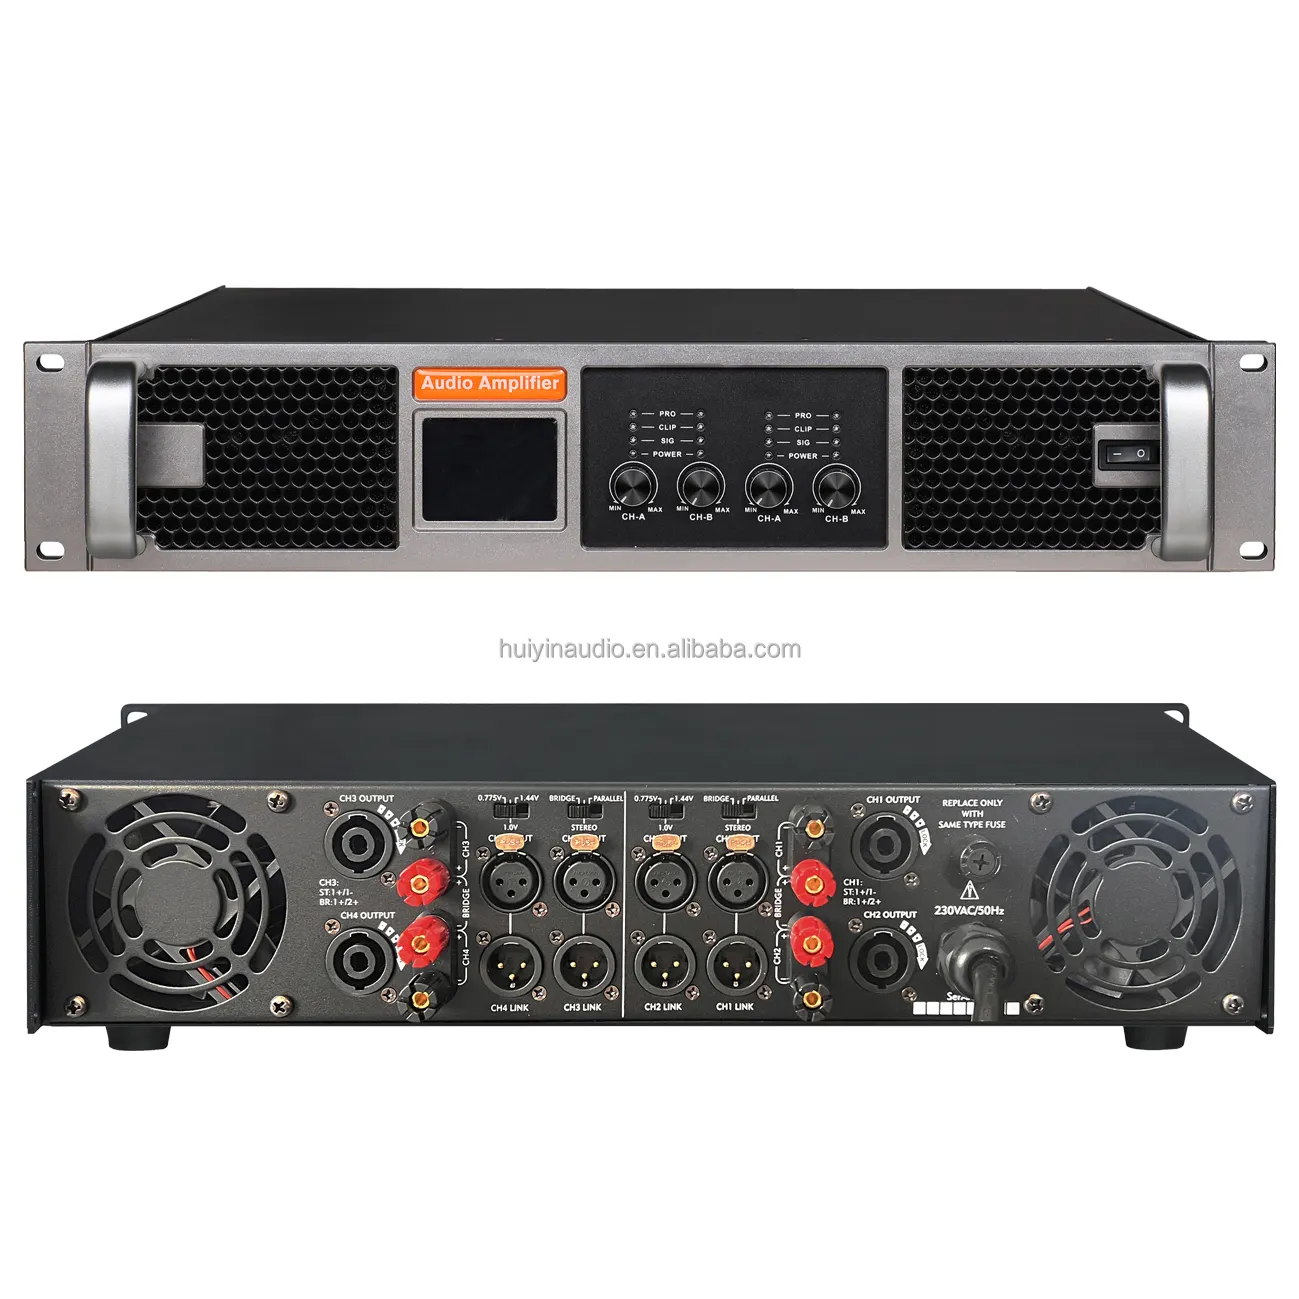 RX-410 4 채널 앰프 4x1000W 8Ohm 전문 앰프 4 팬 클래스 H 4CH 프로 앰프 이벤트 KTV 디스코 DJ 오디오